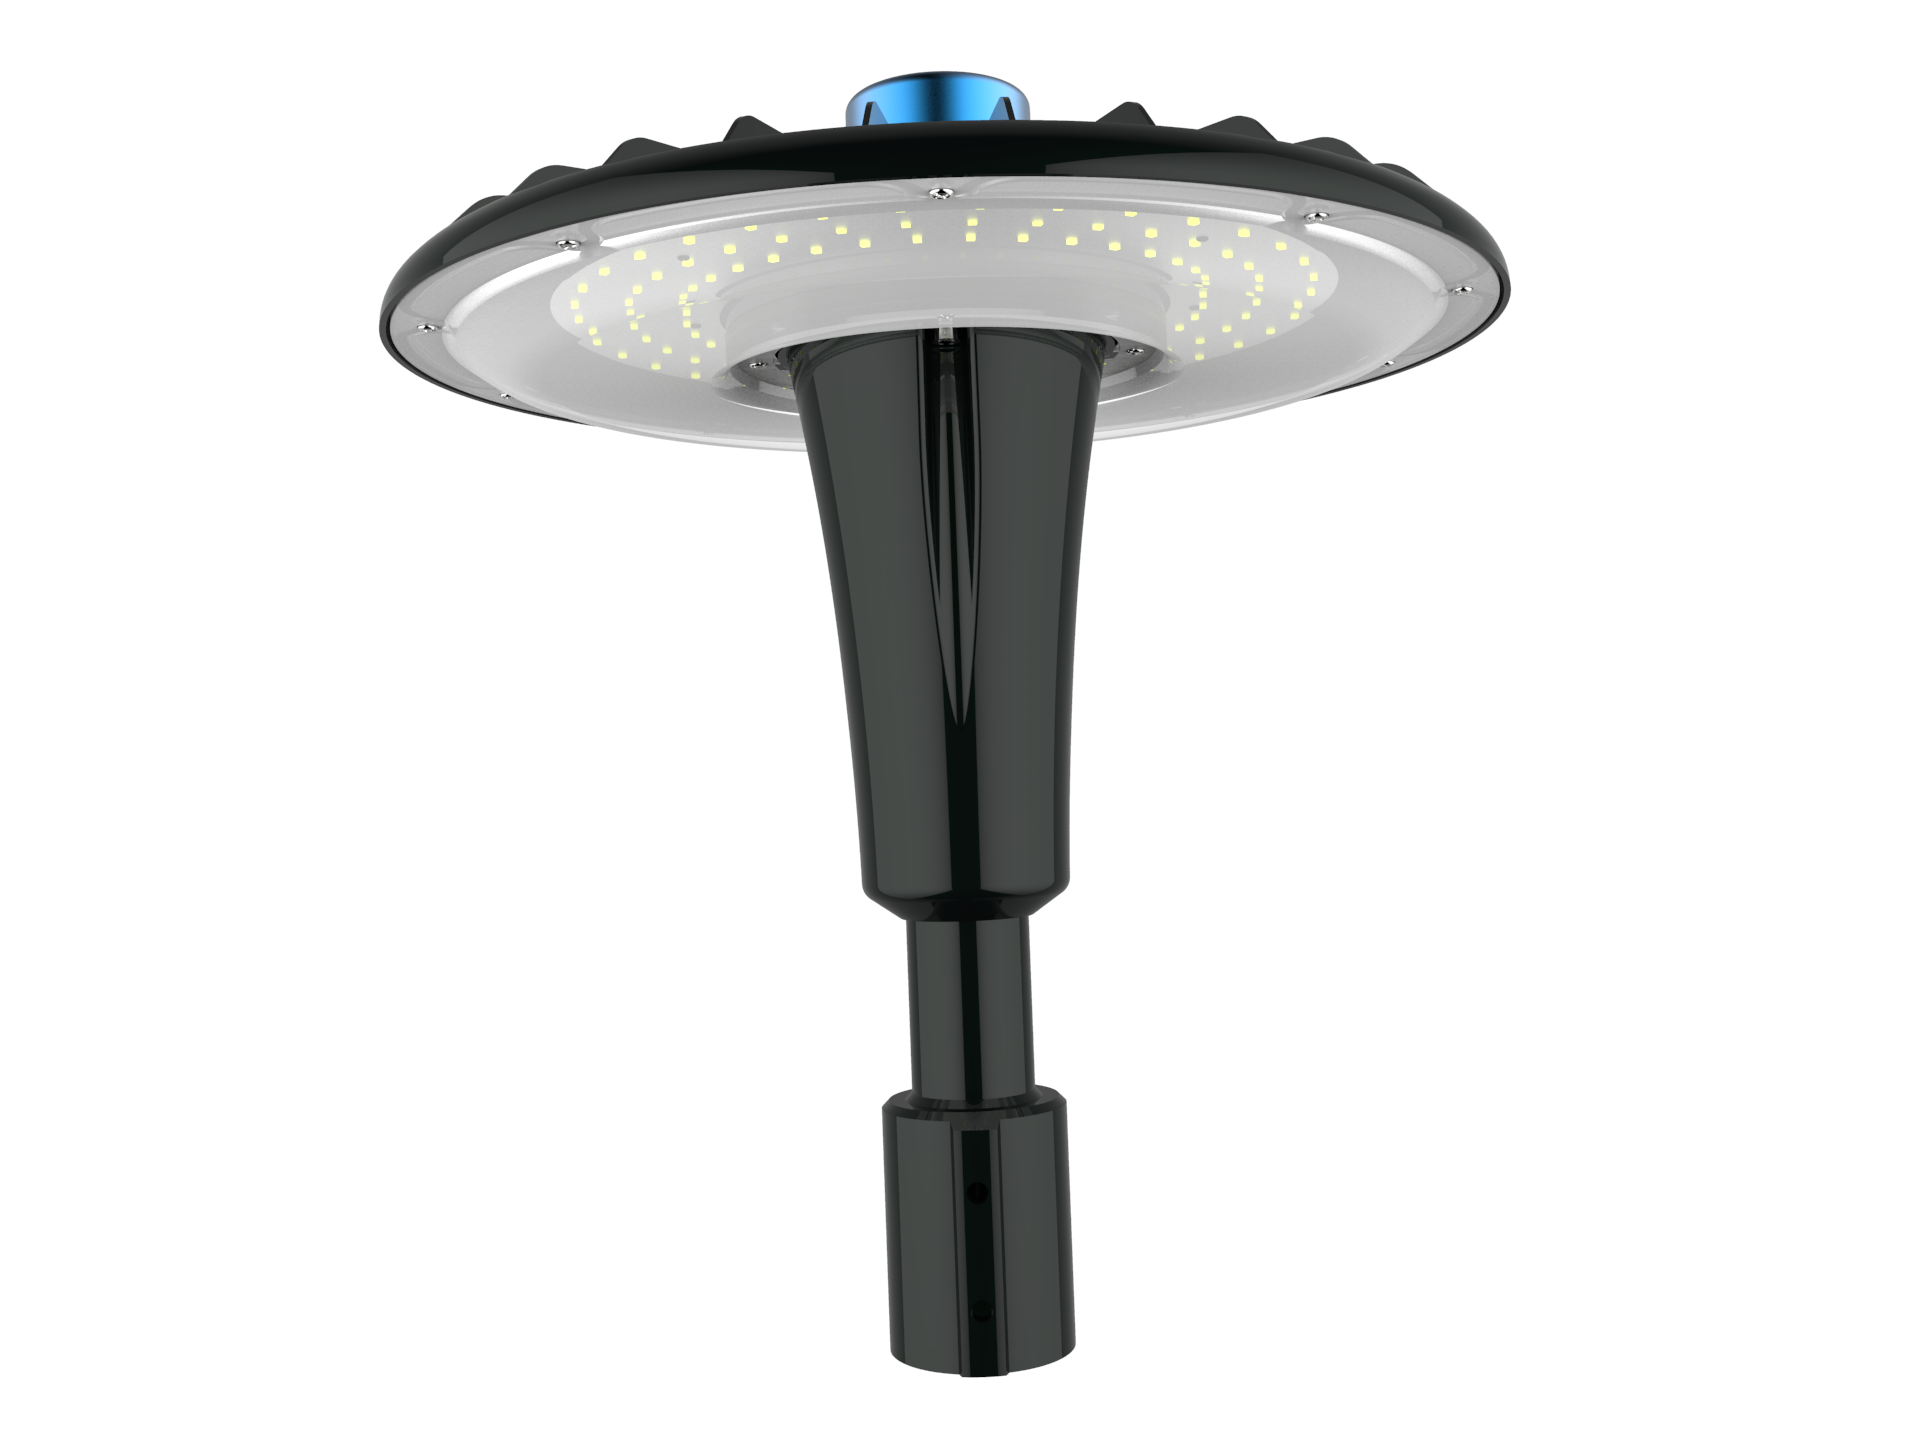 Durable Outdoor Street Lighting: Waterproof LED Garden Light Pole with 5-Year Warranty (80W,100W,120W,150W,200W)